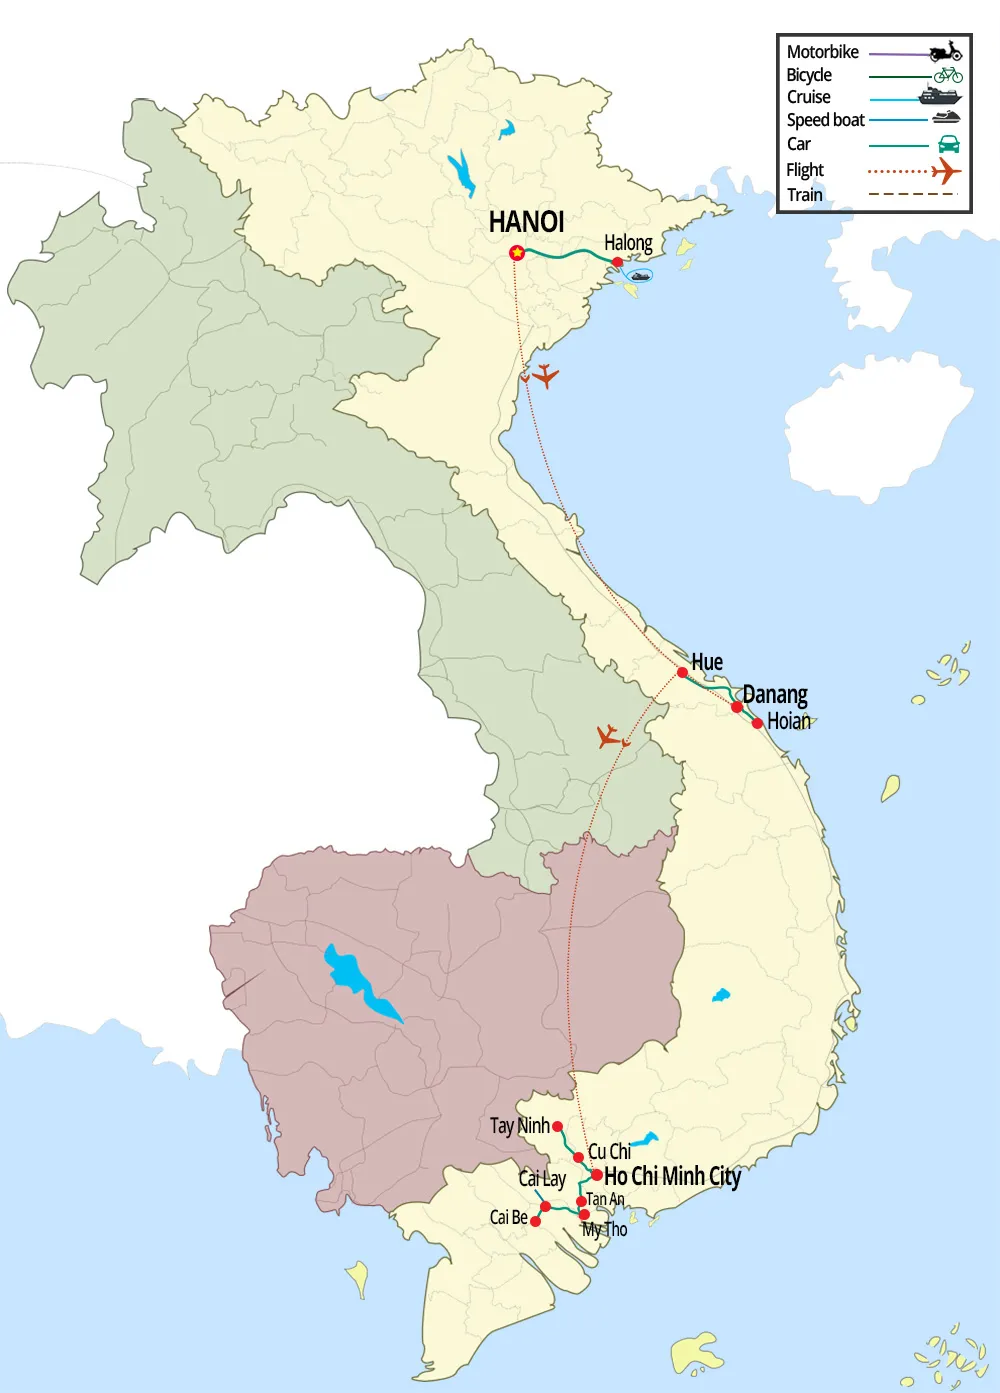 viaggio in vietnam itinerario consigliato 10 giorni